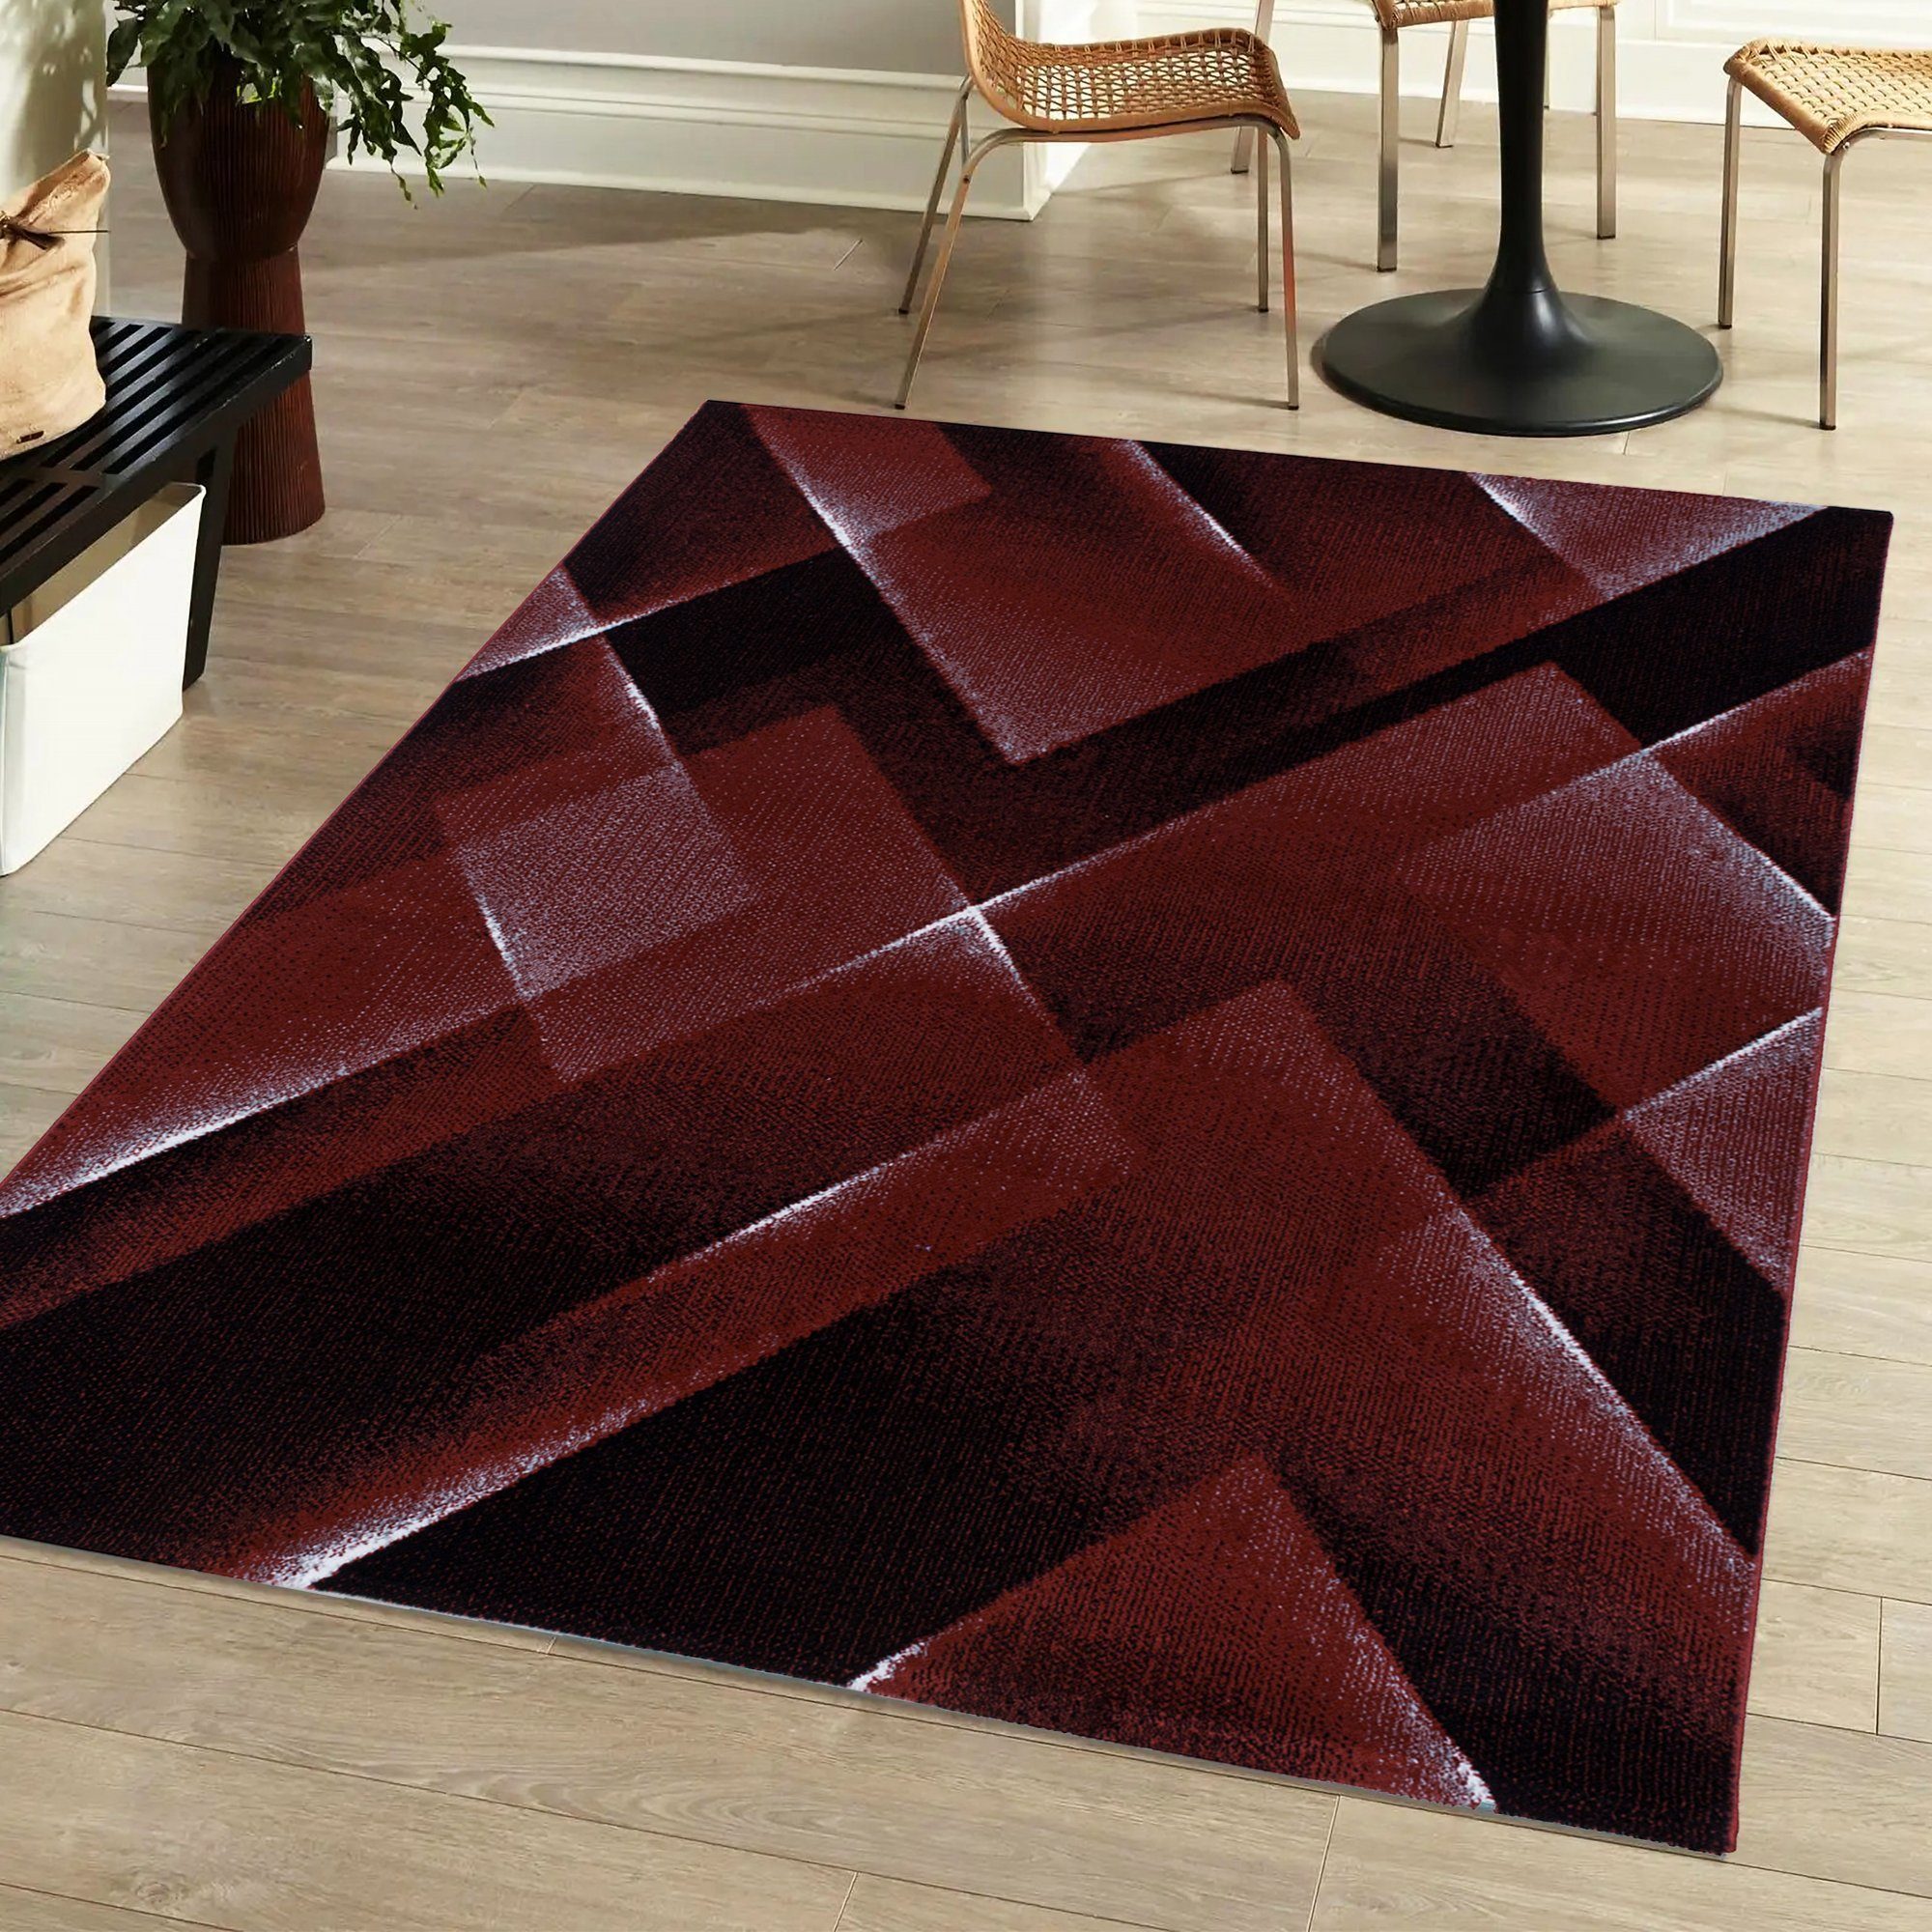 Designteppich Flachflorteppich 3D-Optik Miovani Wohnzimmer Schlafzimmer Kurzflorteppich, Rot